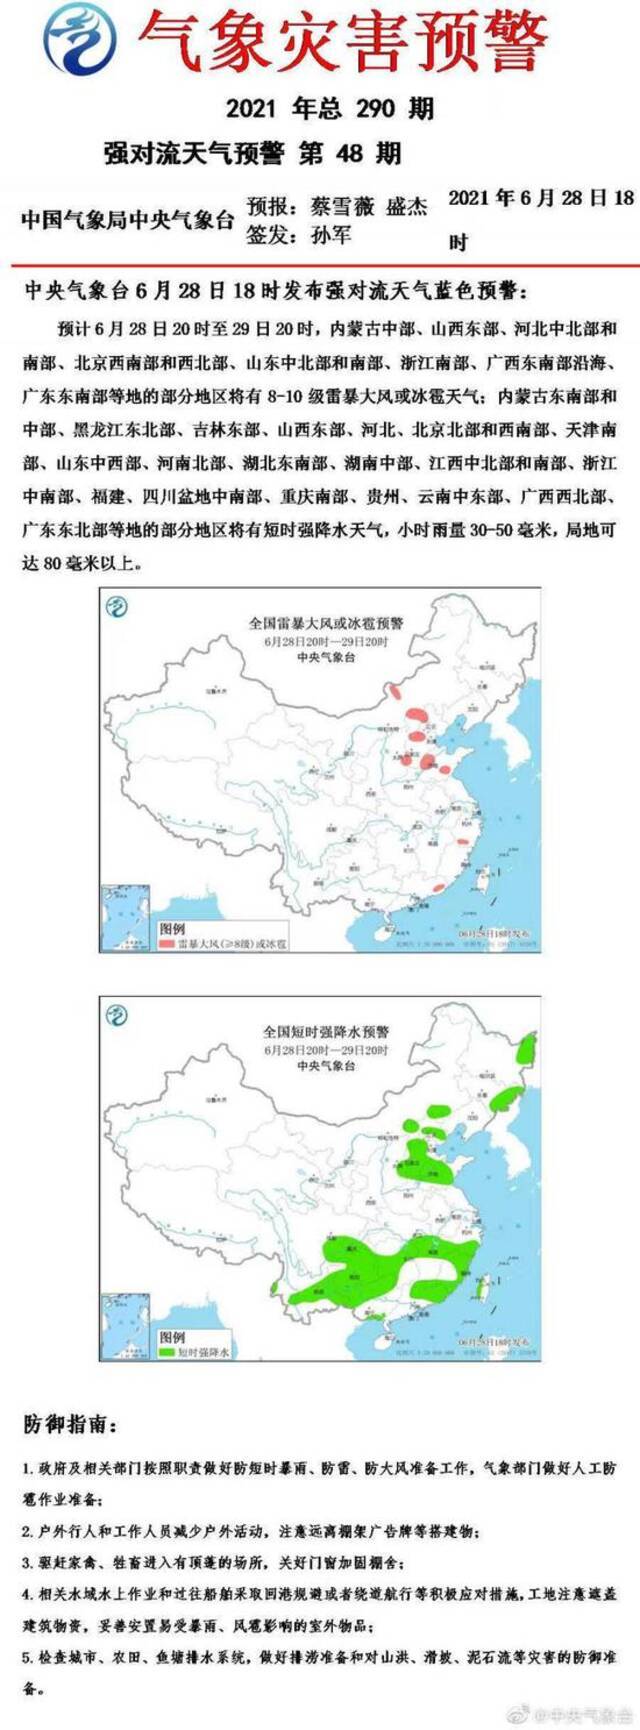 强对流天气蓝色预警：北京西南、西北部将有8-10级雷暴大风或冰雹